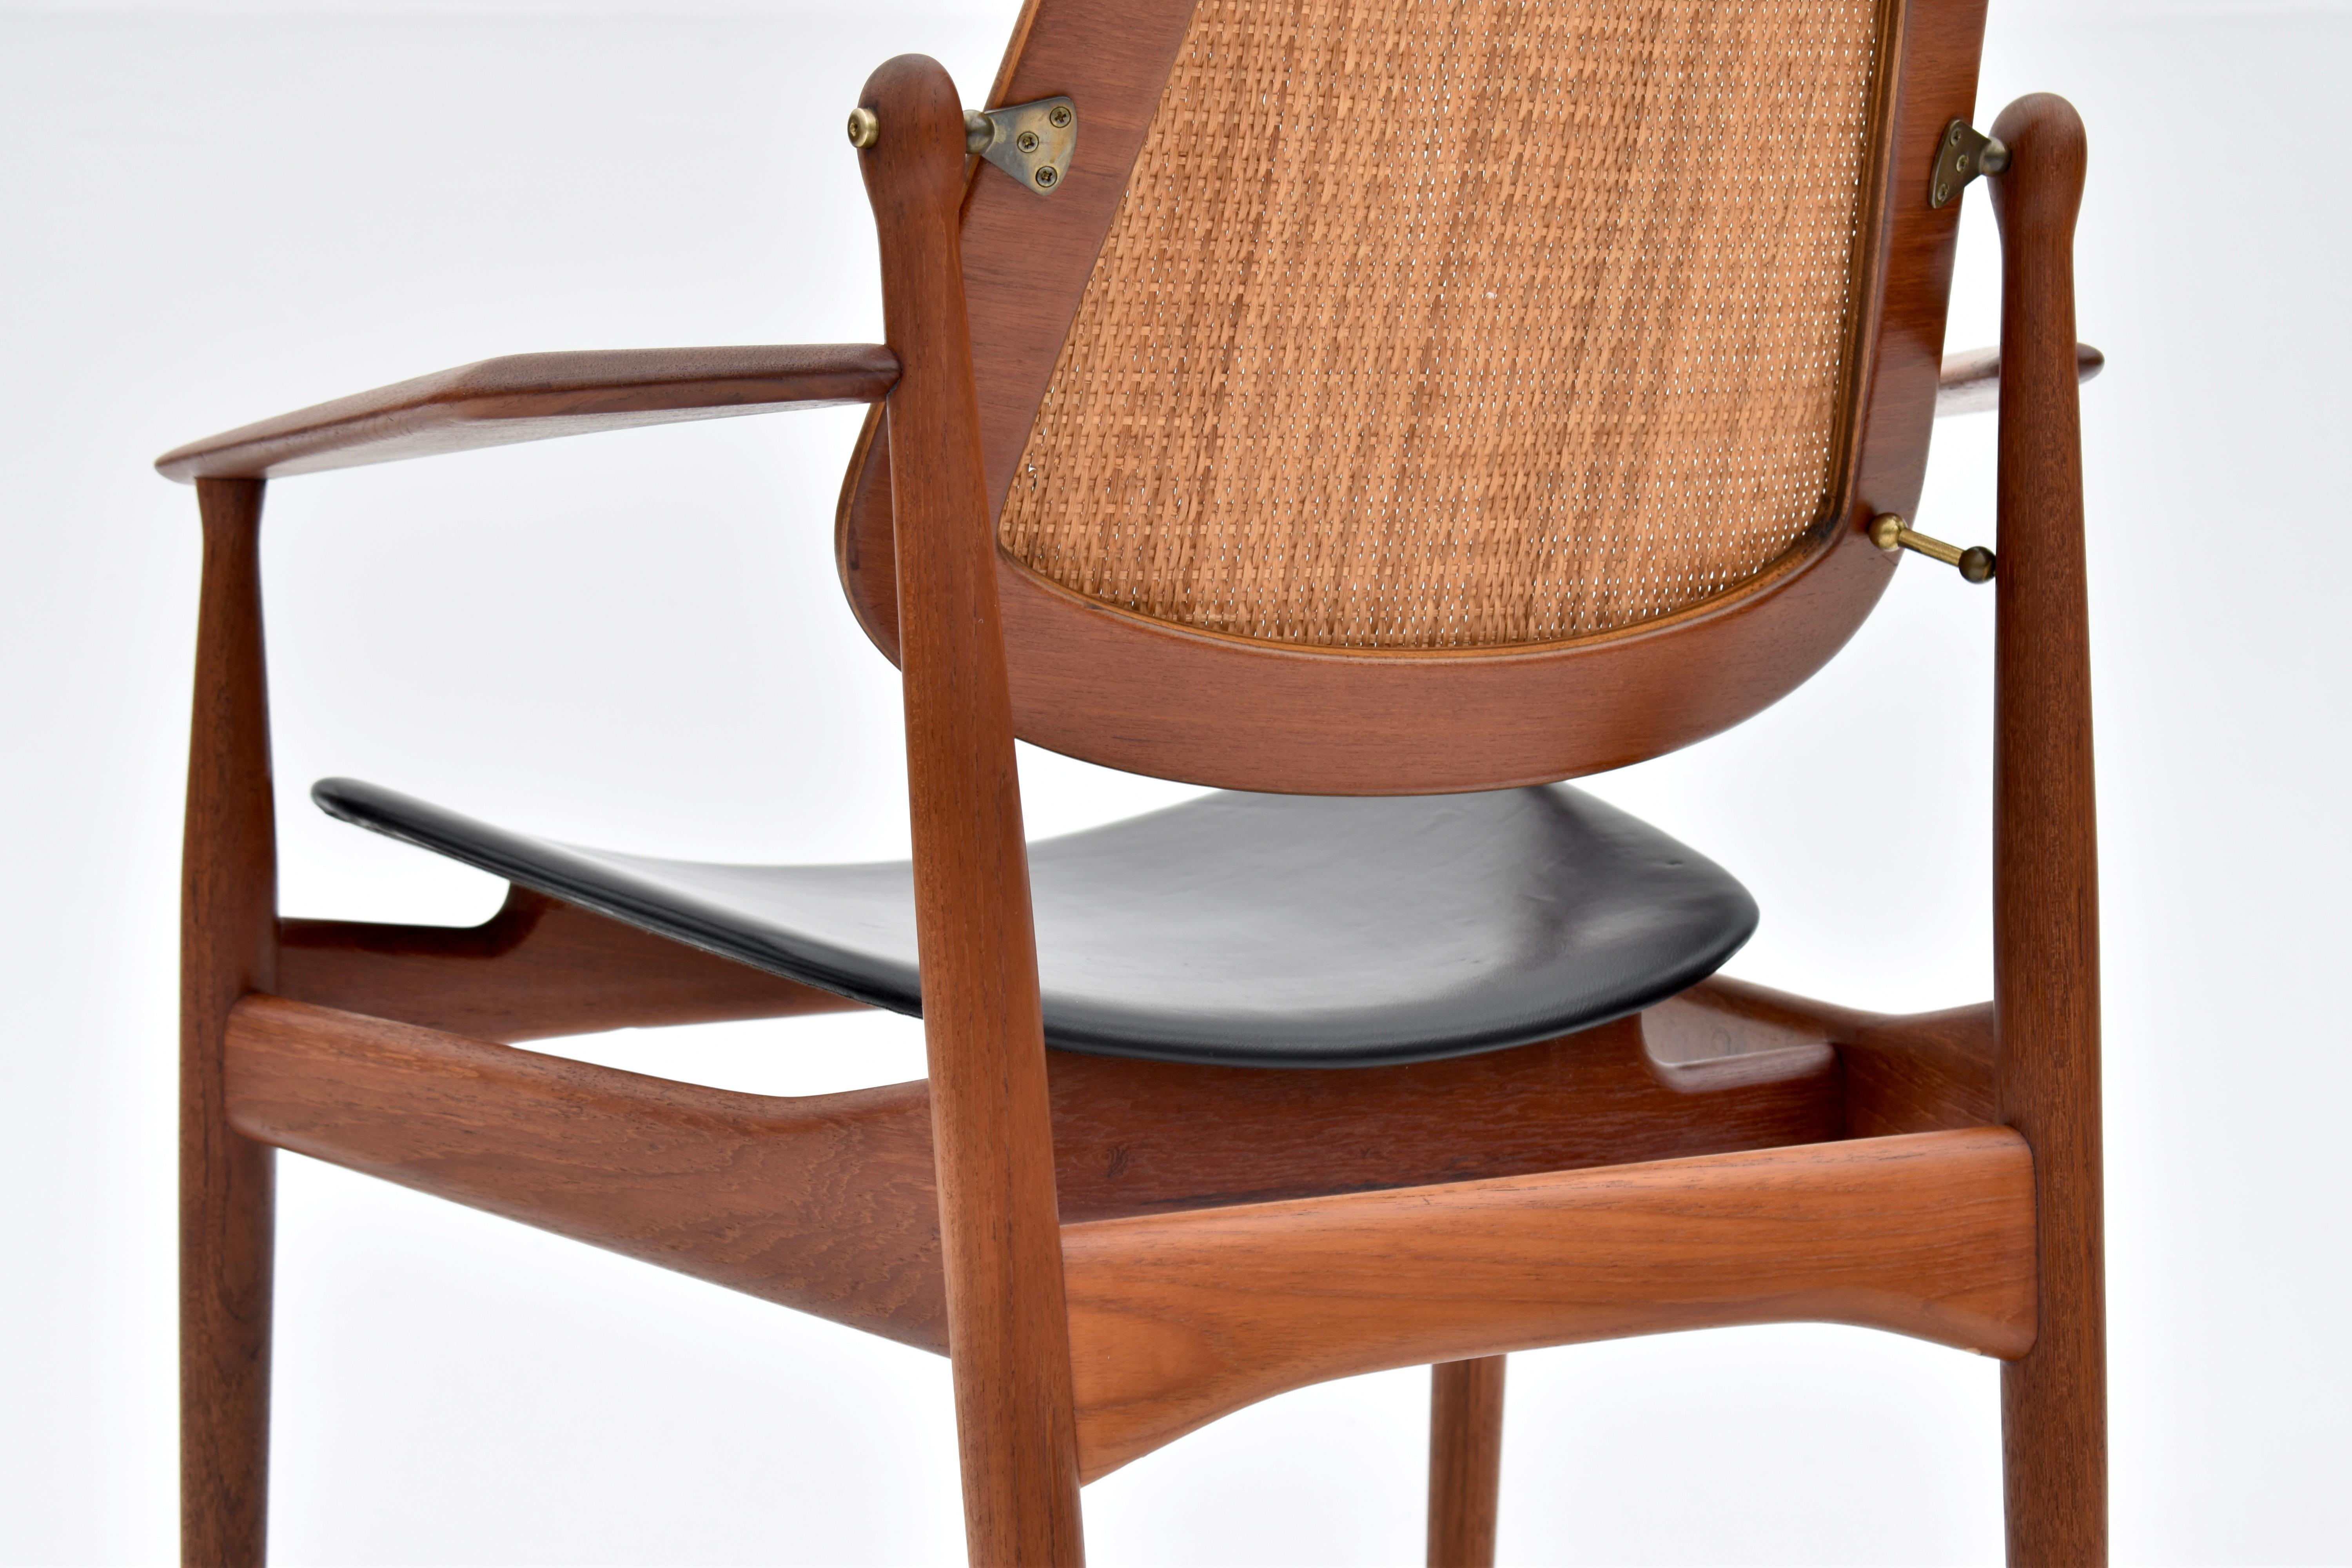 Mid-20th Century Arne Vodder Model 186 Teak, Rattan & Leather Chair For France & Son, Denmark For Sale